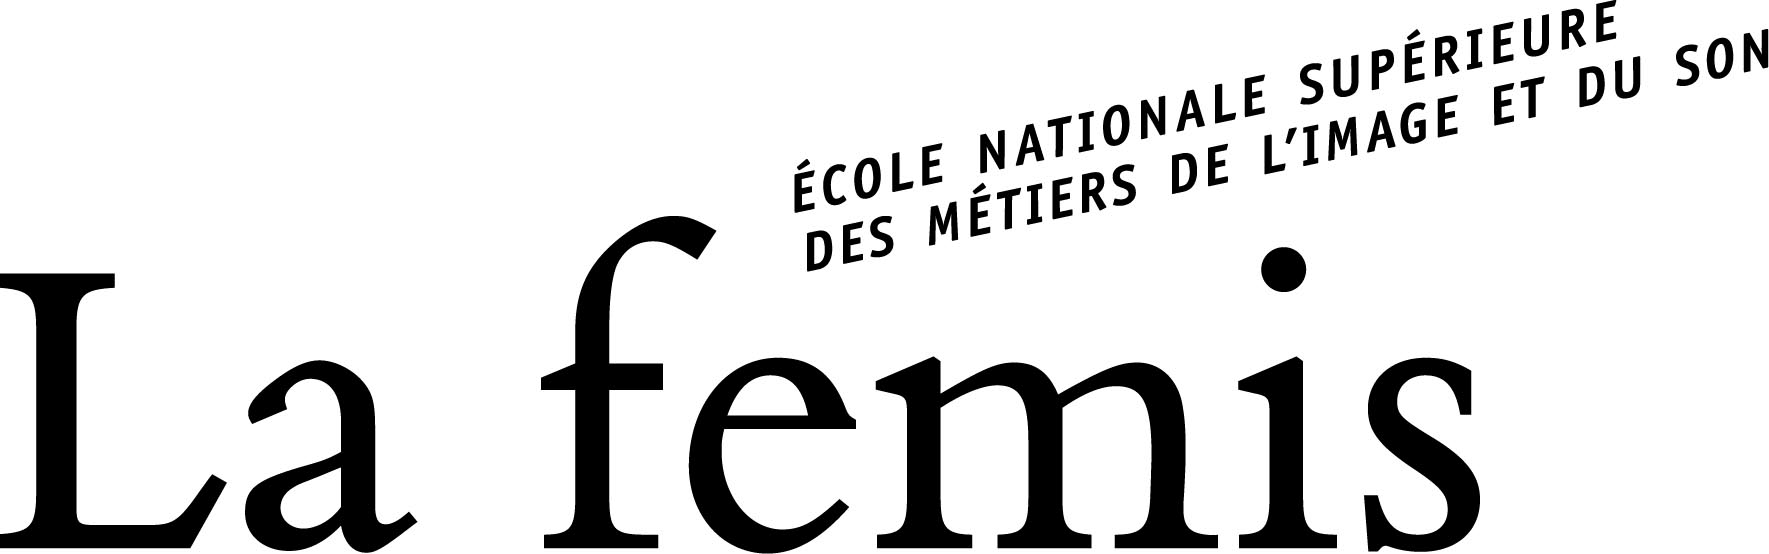 1769px-La_Fémis_logo.svg